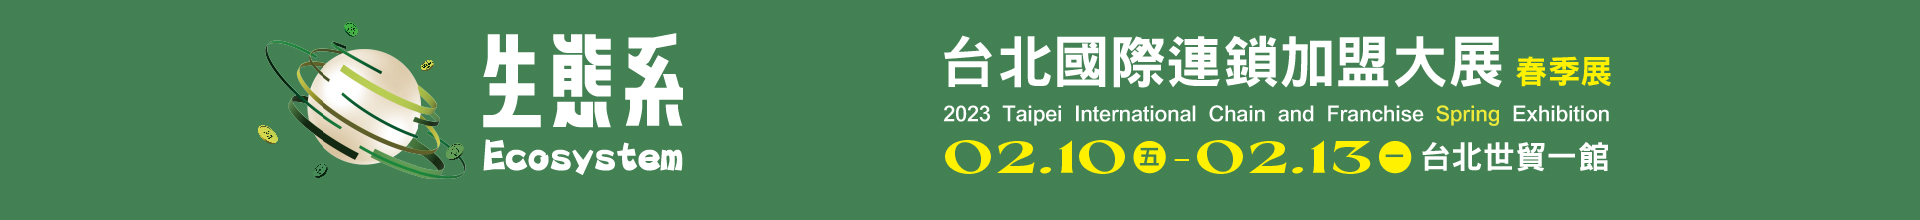 2023台北國際連鎖加盟大展-春季展